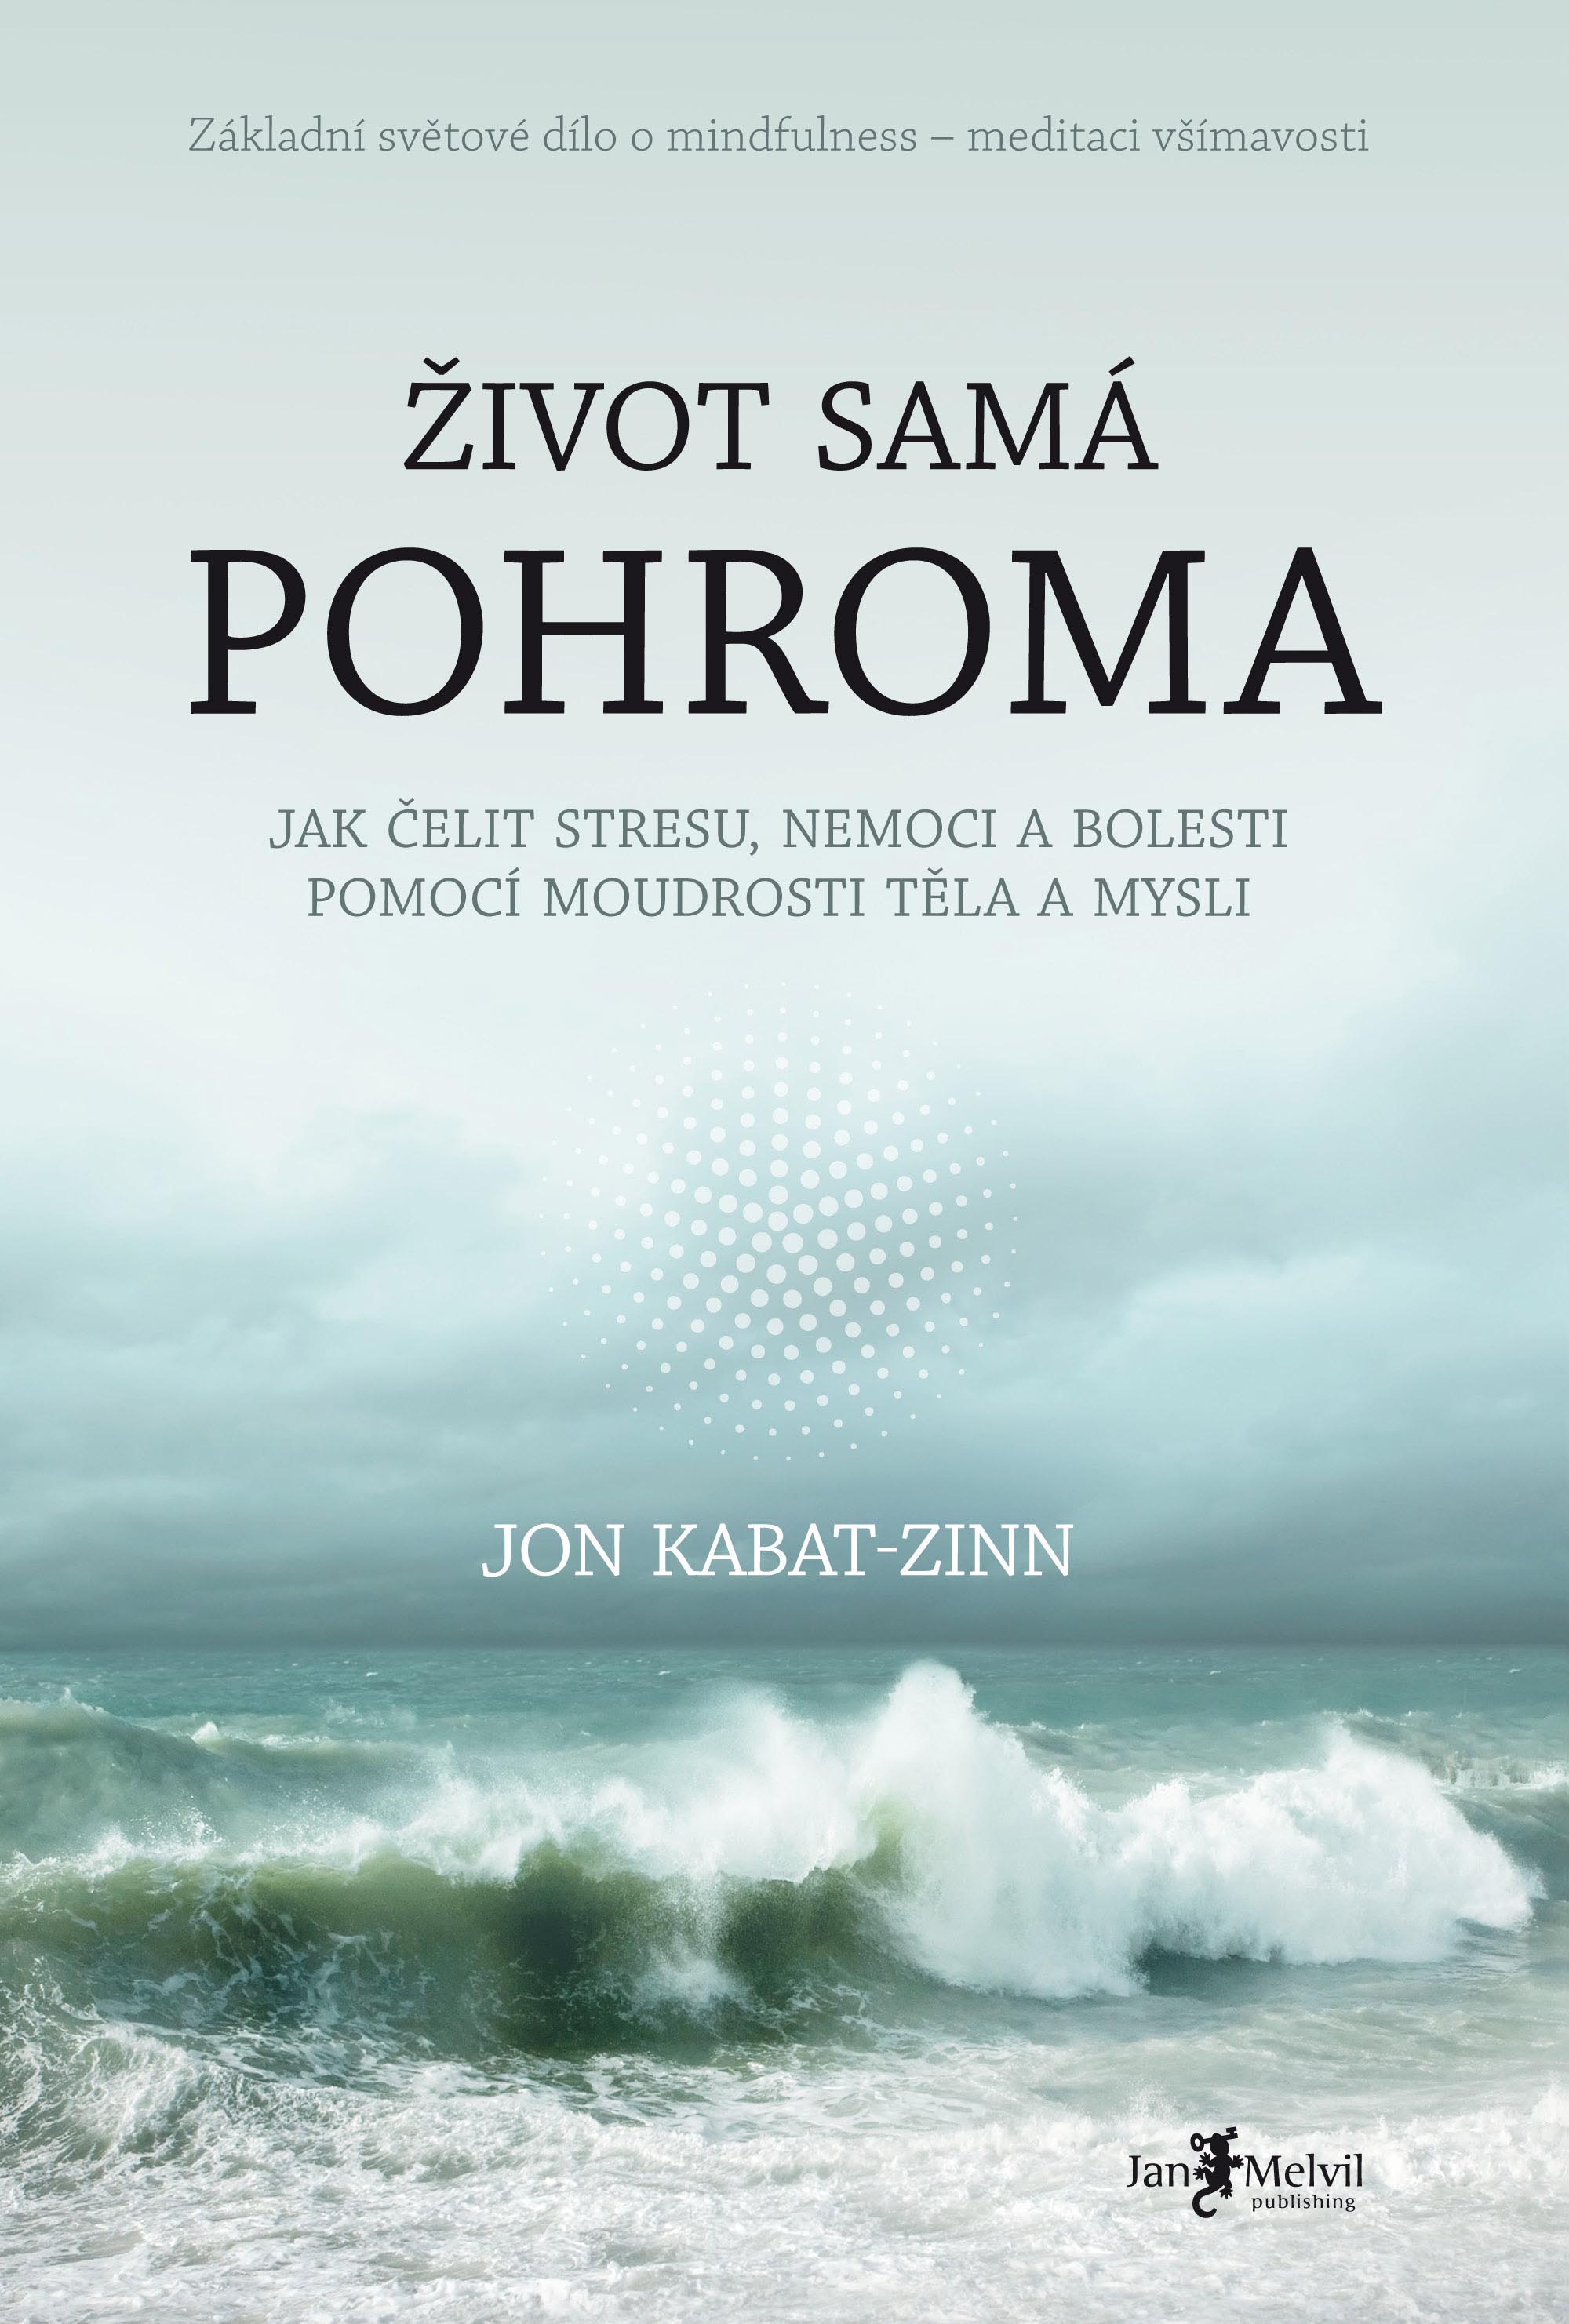 Jon Kabat-Zinn – Život samá pohroma (Jak čelit stresu, nemoci a bolesti pomocí moudrosti těla a mysli)